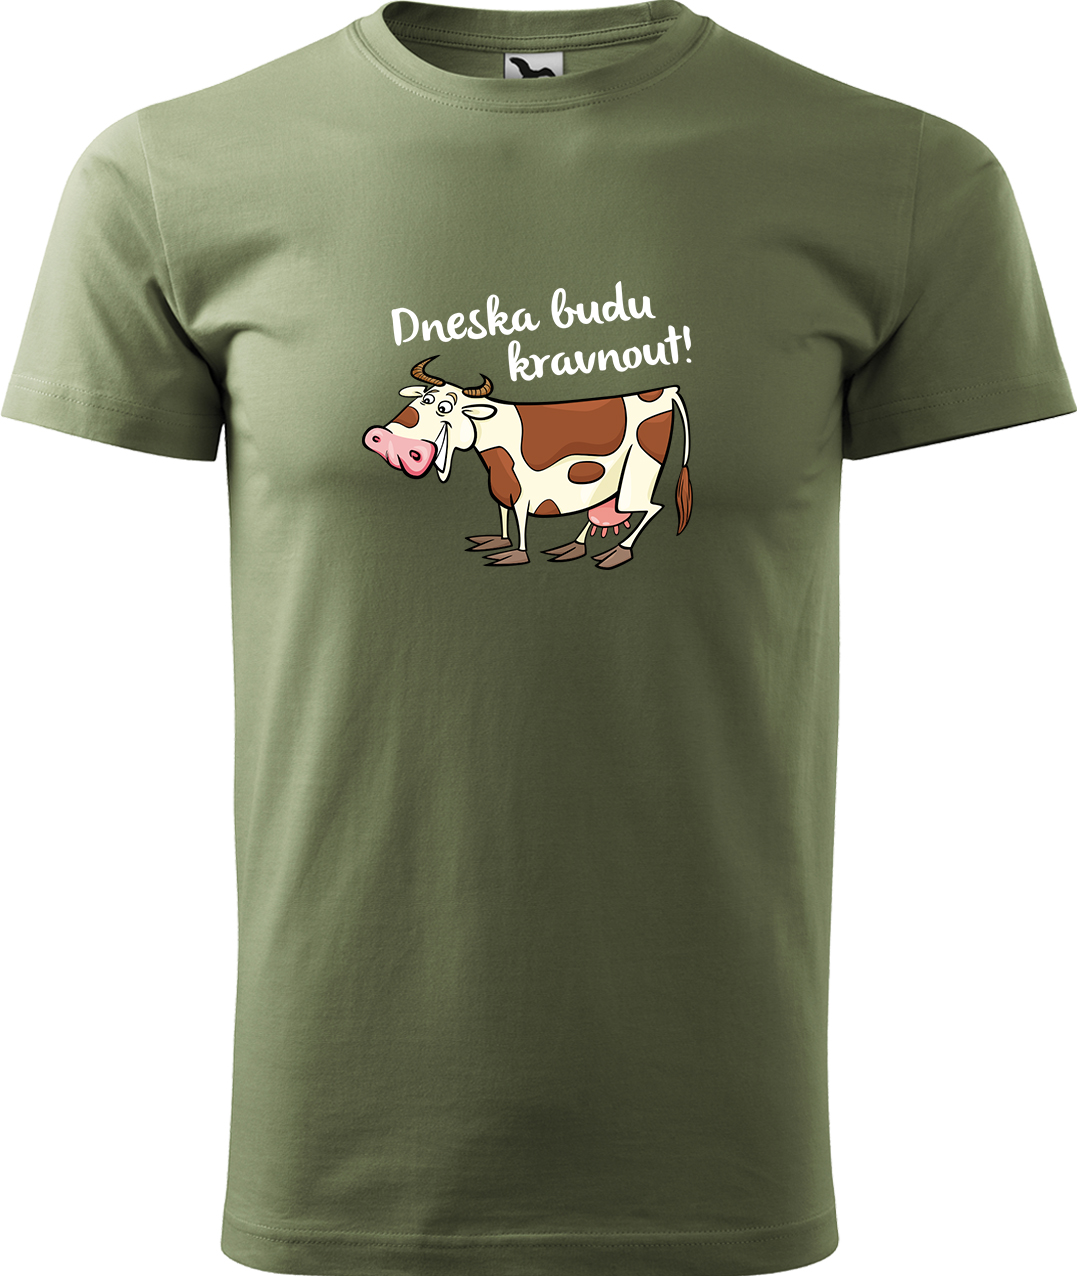 Pánské tričko s krávou - Dneska budu kravnout! Velikost: 4XL, Barva: Světlá khaki (28), Střih: pánský